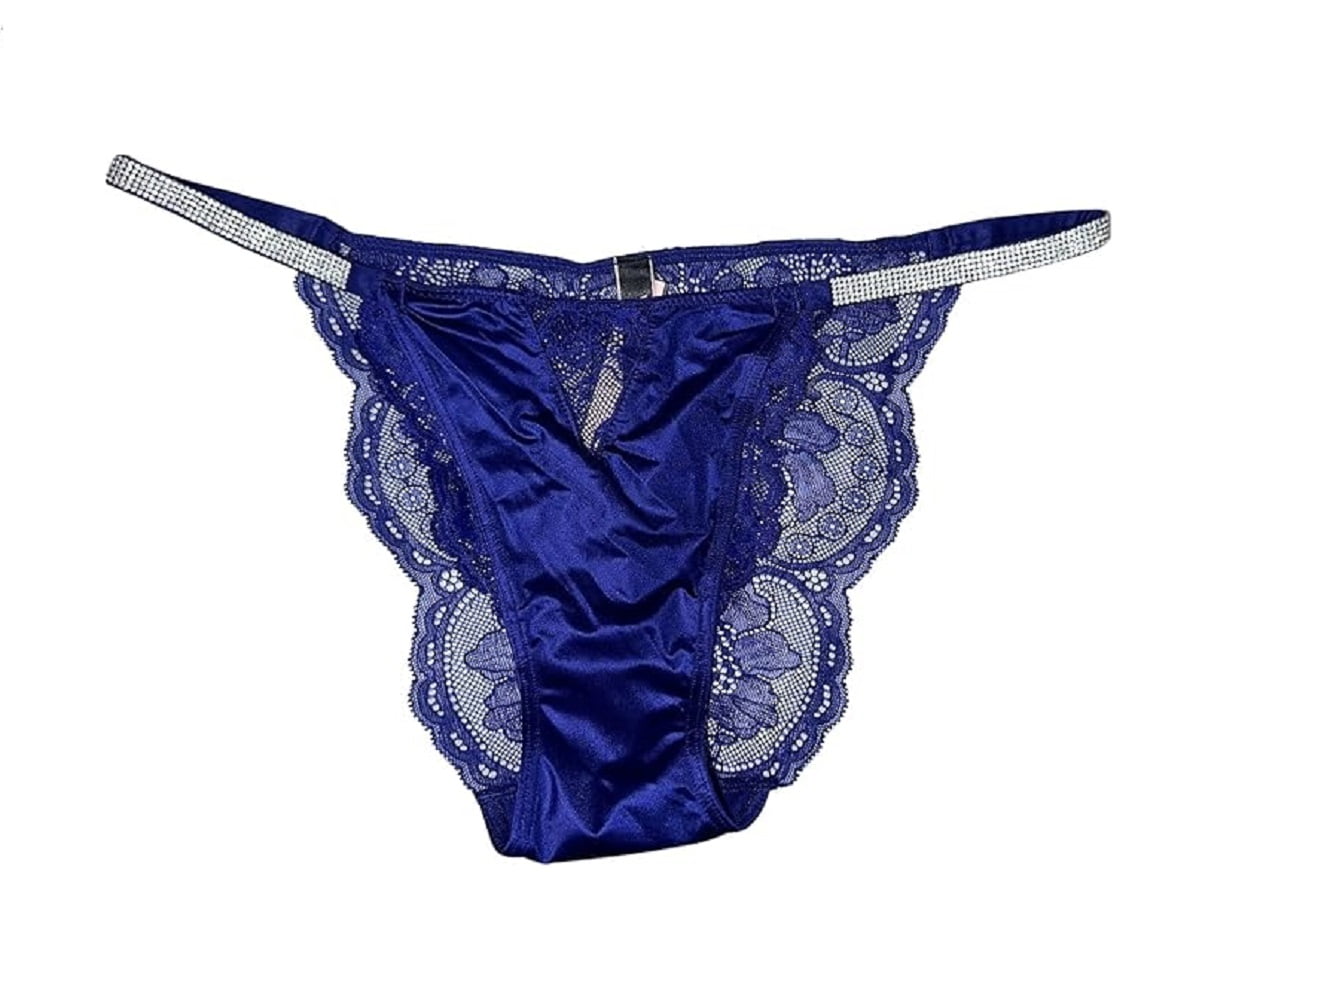 Victoria's Secret Micro Lace Shine Strap Cheekini/Cheeky Panty Color Night  Ocean Blue Size Small NWT 